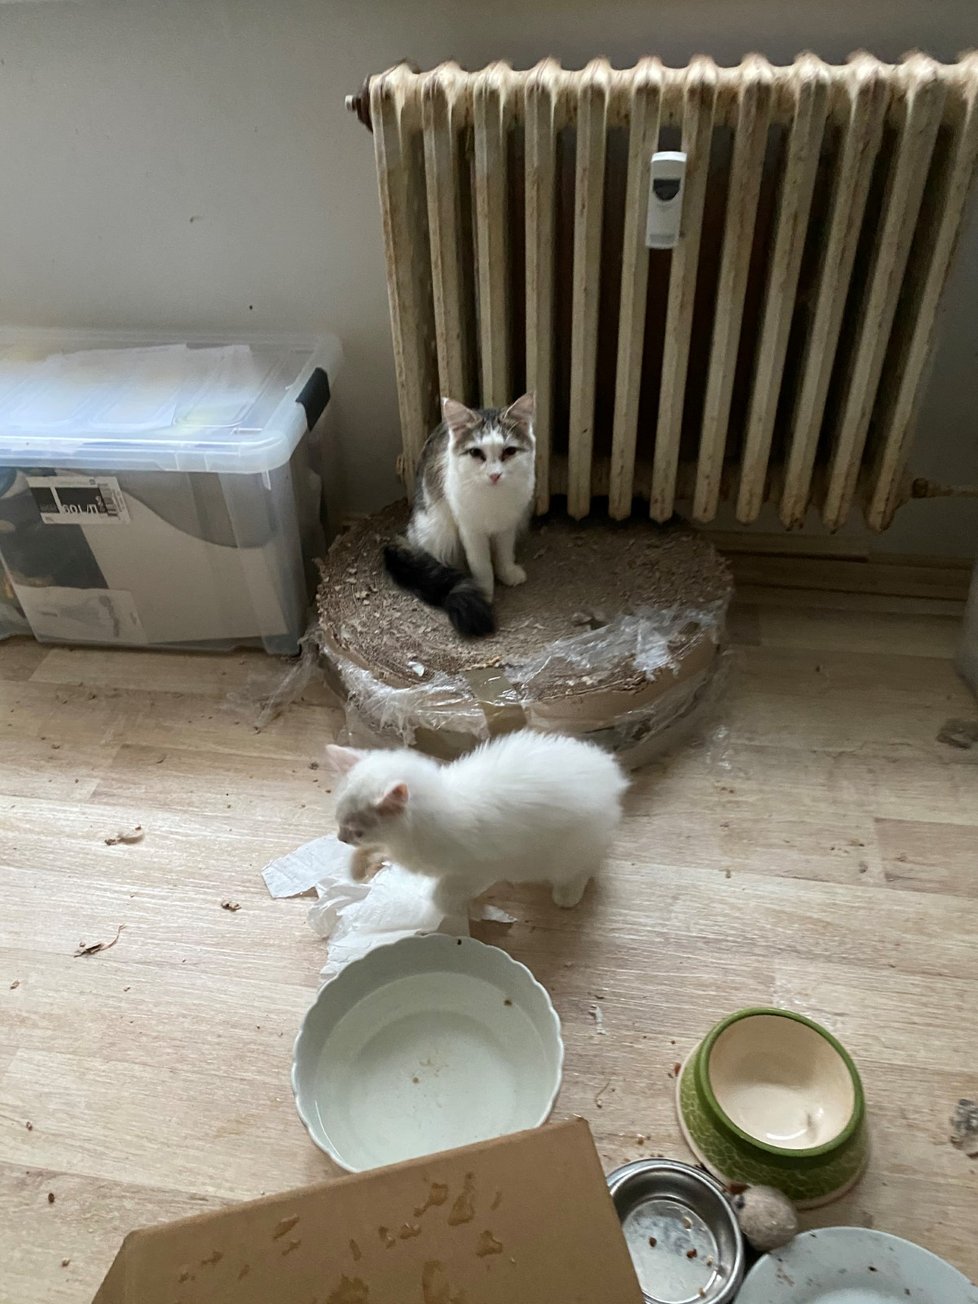 Veterináři odebrali chovatelce z bytu v pražských Horních Počernicích 41 koček, z toho devět koťat. Byly chované v nevhodných podmínkách a nacházely se ve špatném zdravotním stavu